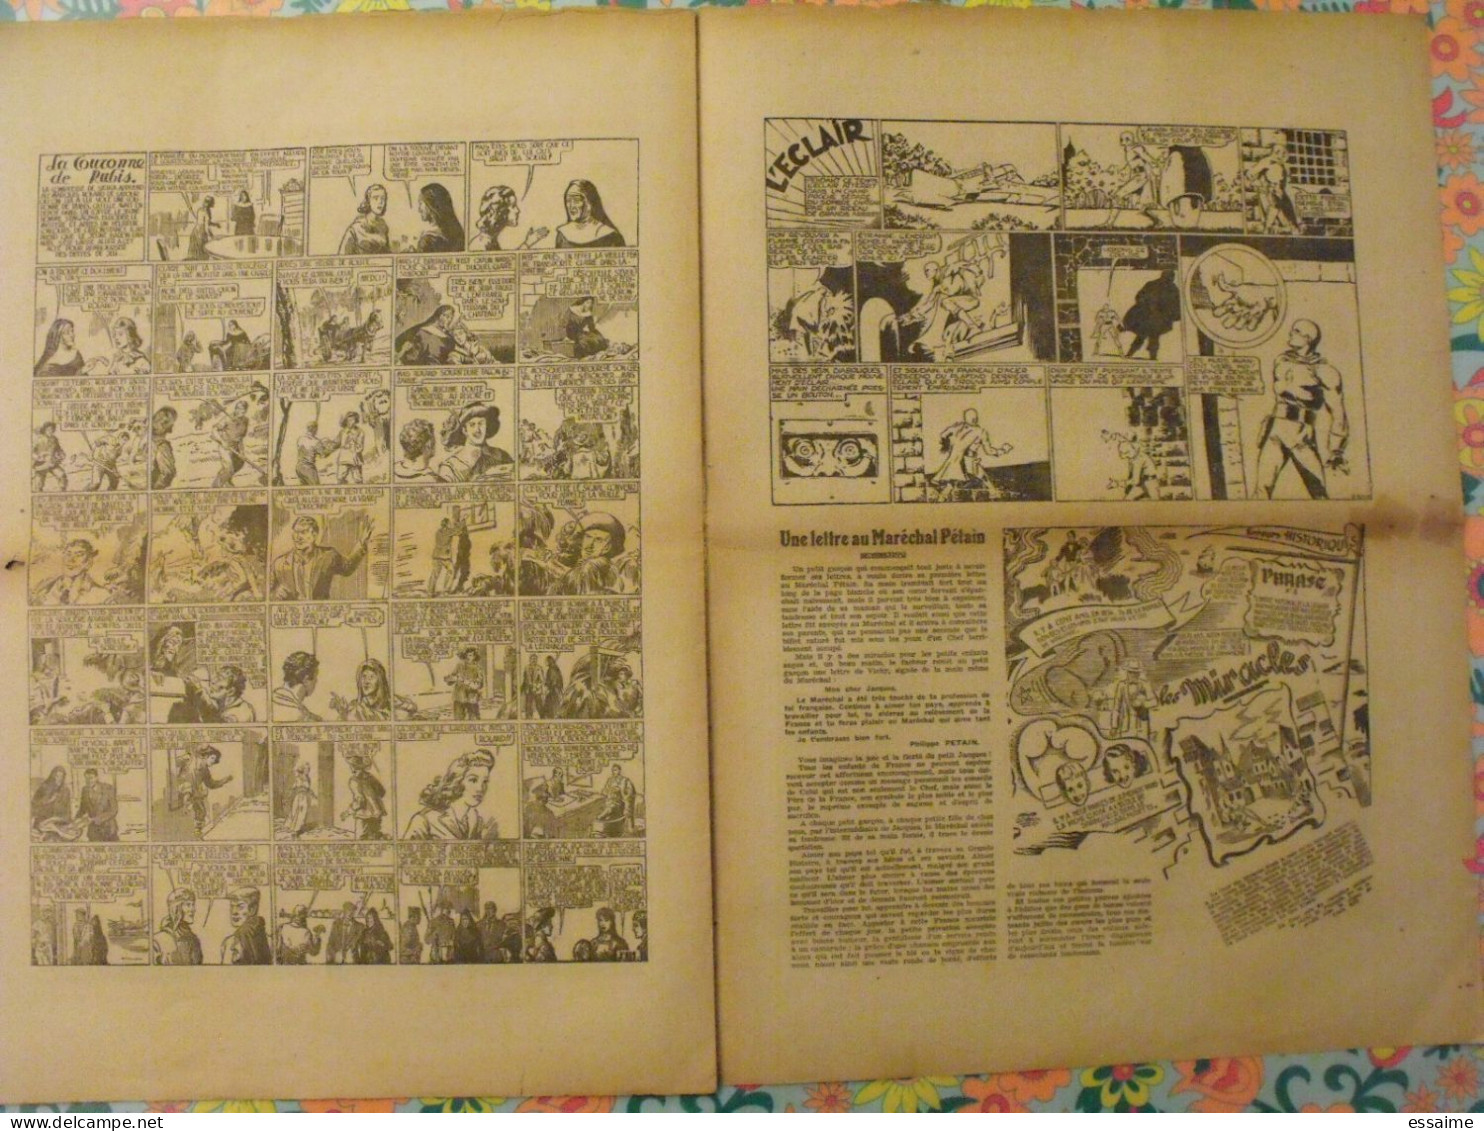 5 numéros de l'Audacieux de 1941-42. le corsaire de la mort, le roi du far-west, christophe colomb. A redécouvrir